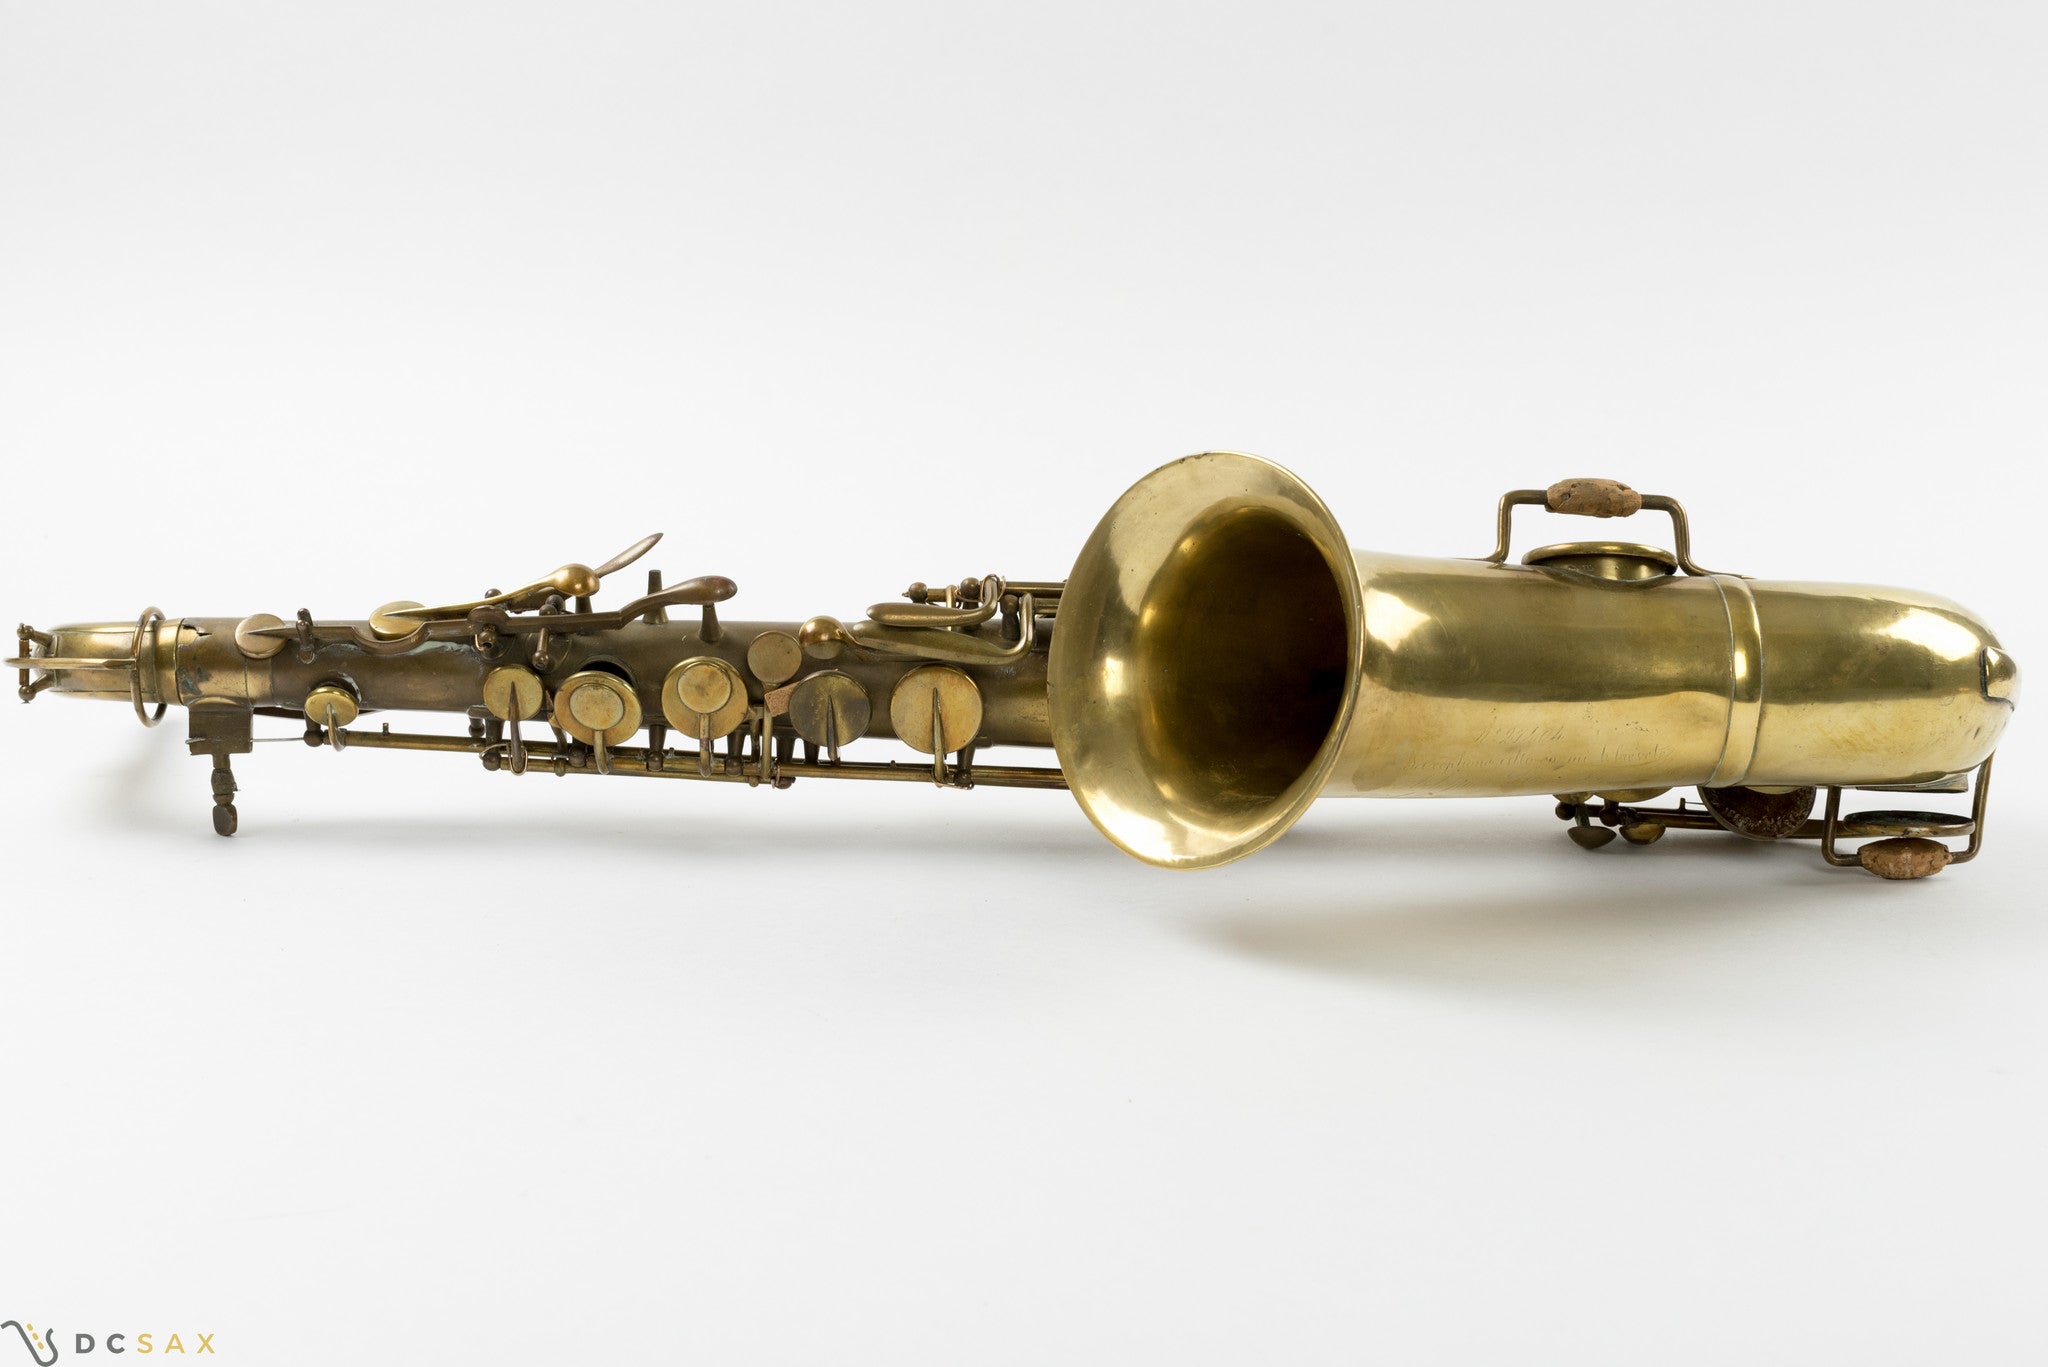 1865 Adolphe Sax Alto Saxophone